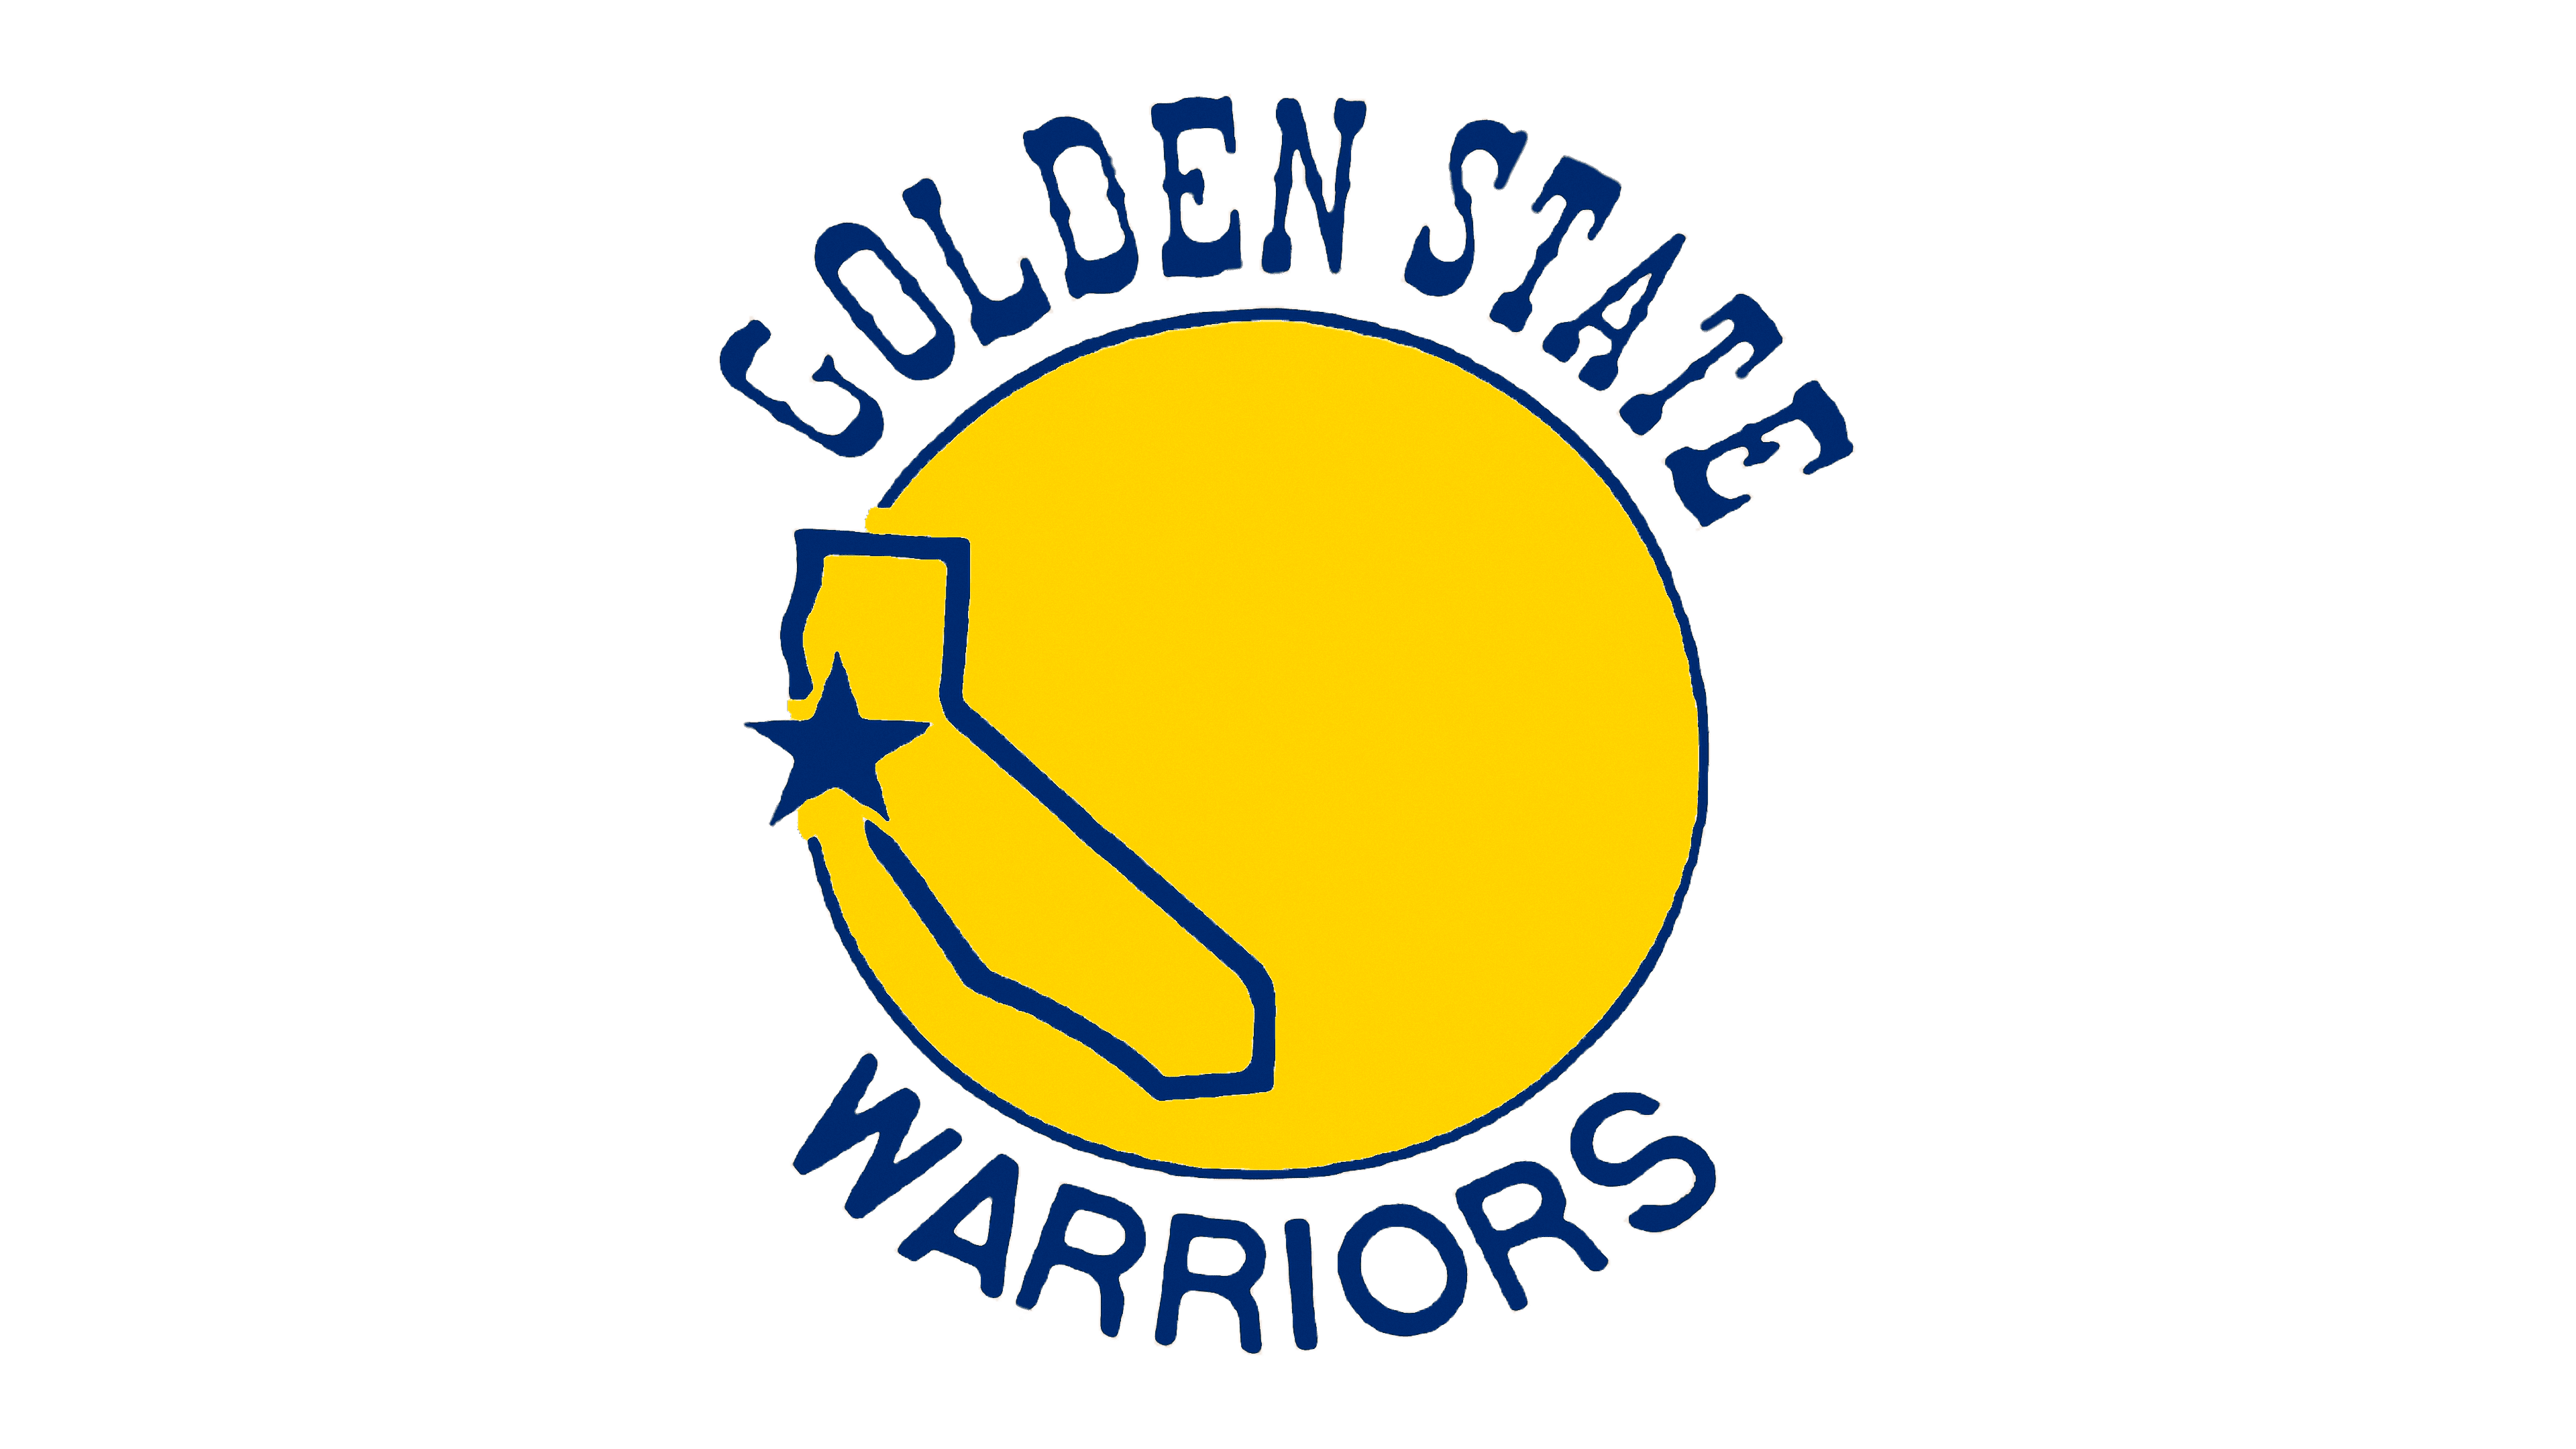 warrior logos